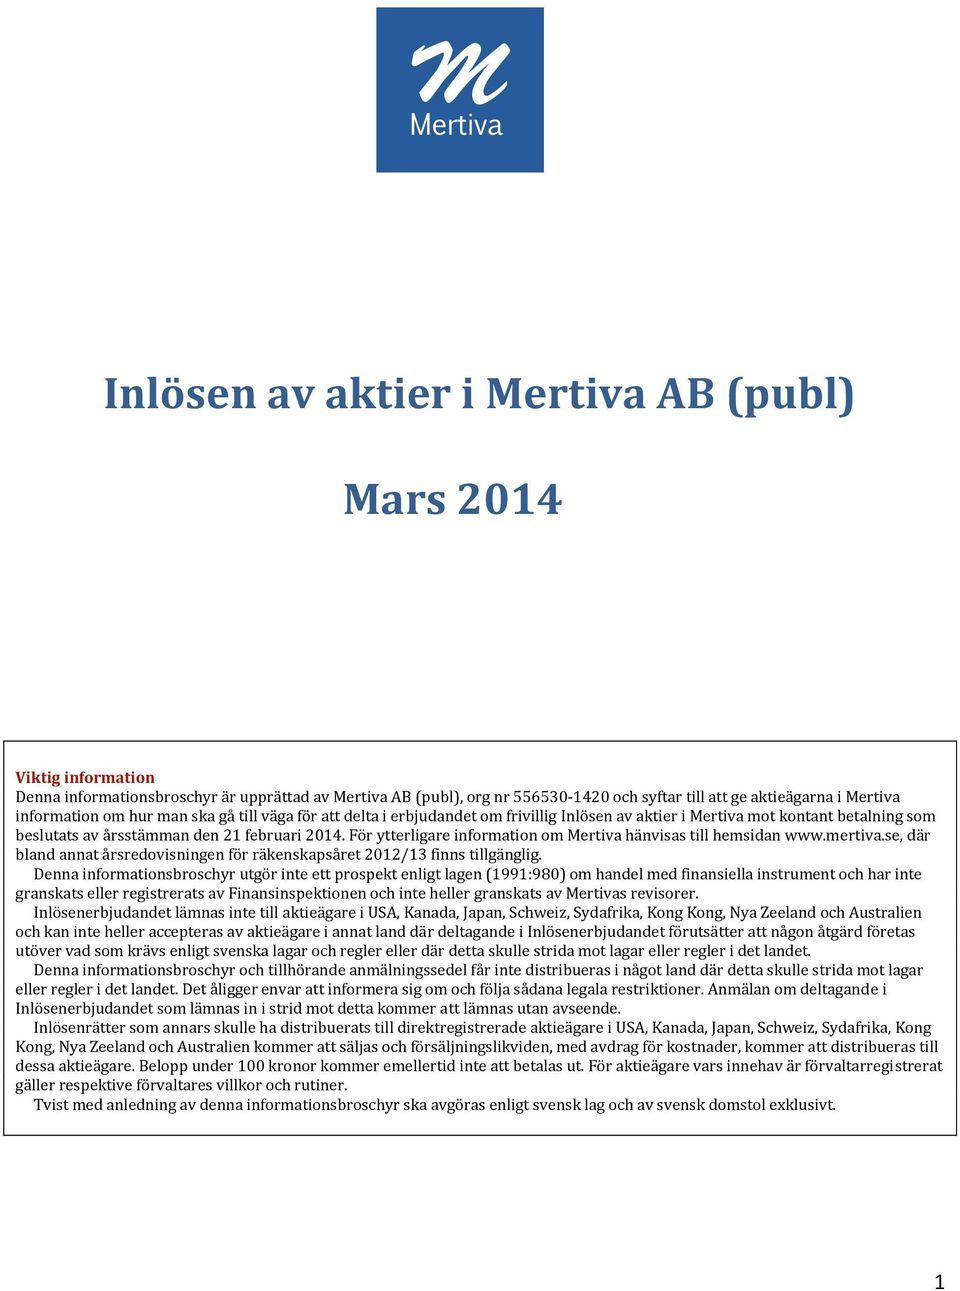 För ytterligare information om Mertiva hänvisas till hemsidan www.mertiva.se, där bland annat årsredovisningen för räkenskapsåret 2012/13 finns tillgänglig.